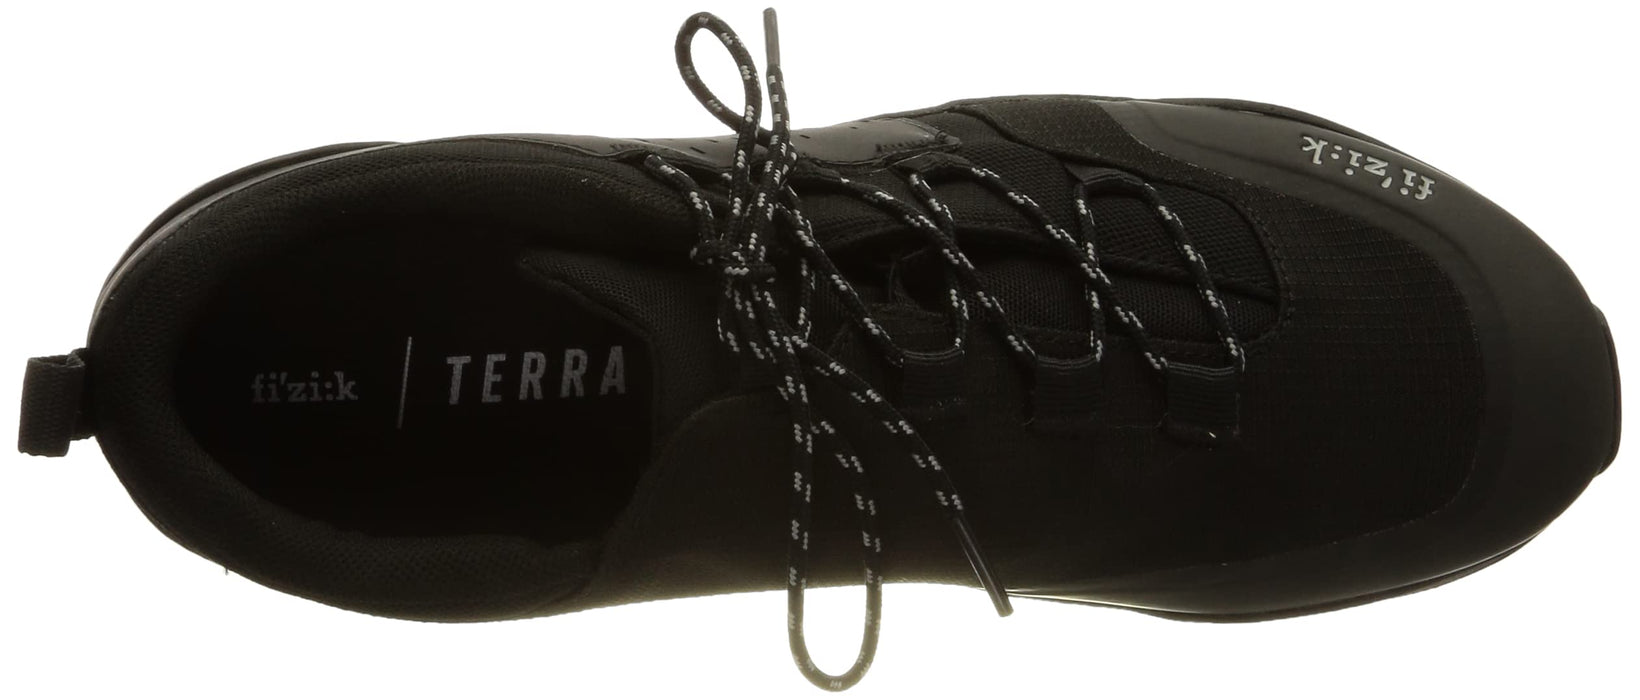 Fi'zi:k Terra Ergolace X2 Mountain Biking Shoes